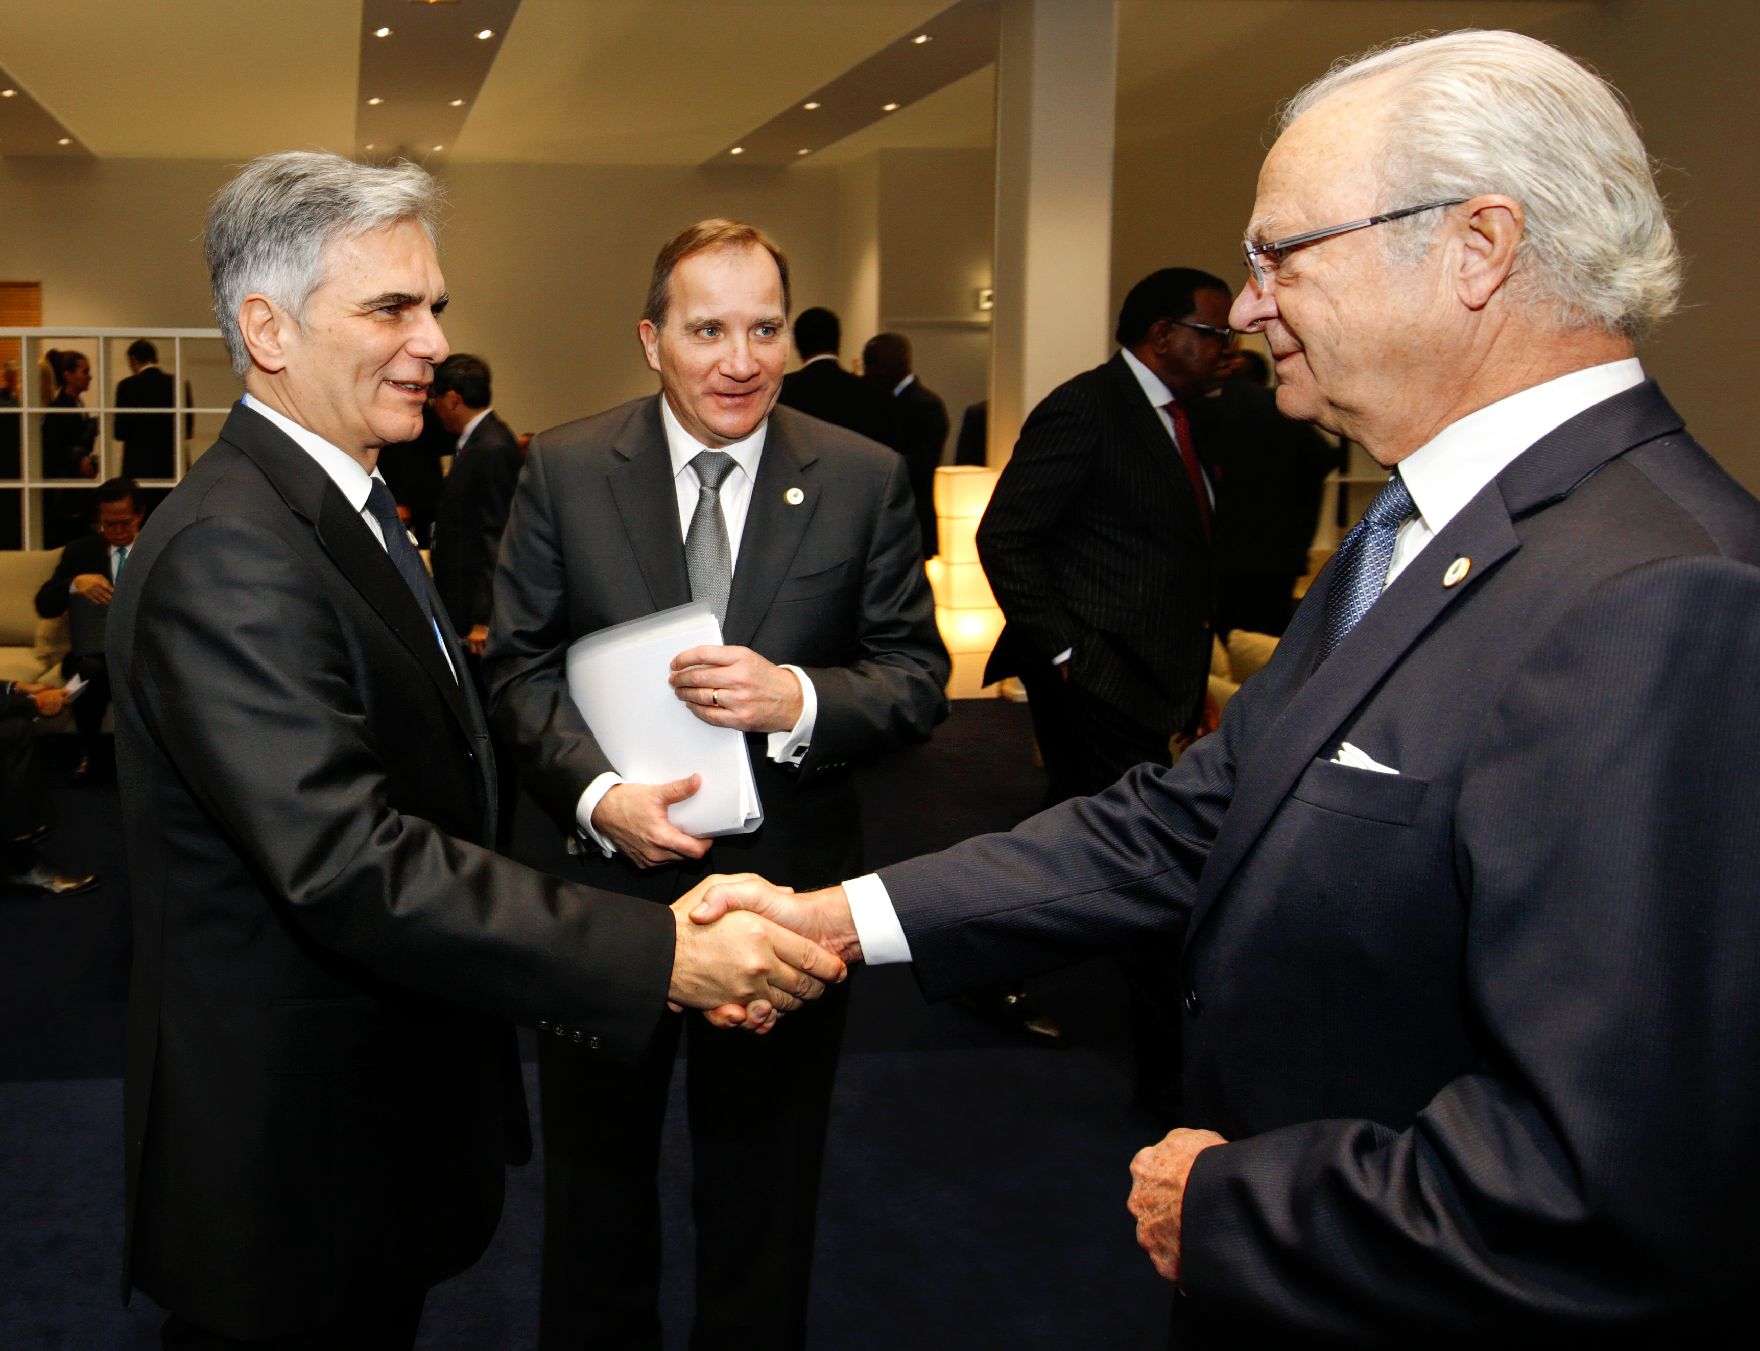 Am 30. November 2015 fand die UN-Klimakonferenz in Paris statt. Im Bild Bundeskanzler Werner Faymann (r.) mit Carl XVI. Gustaf, König von Schweden (l.).